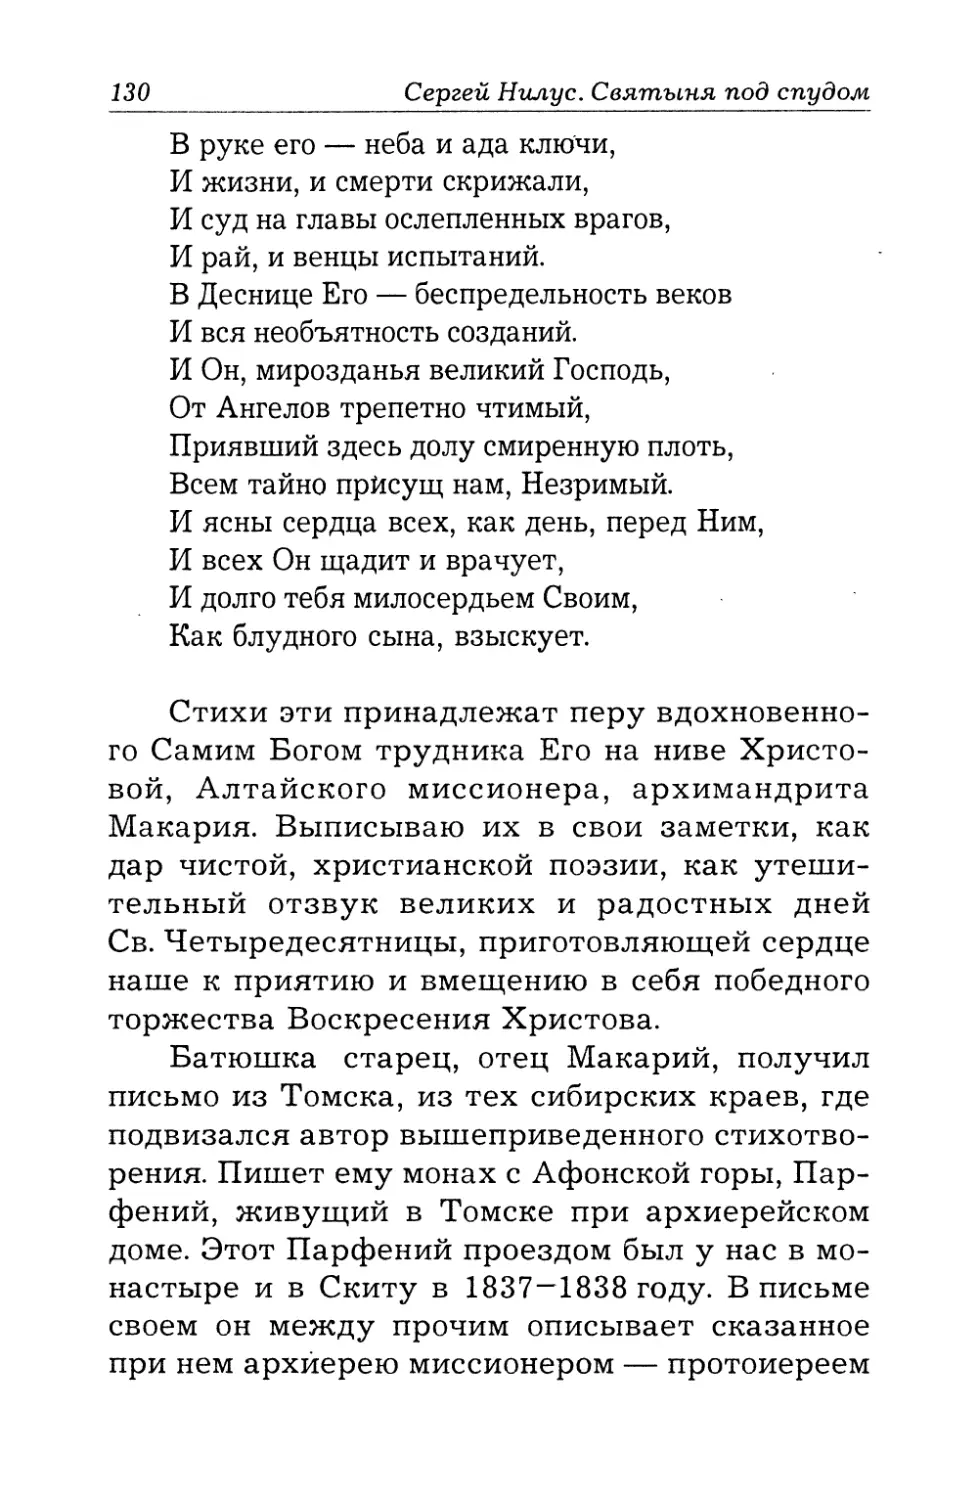 Письмо из Томска о современном Онуфрии Великом